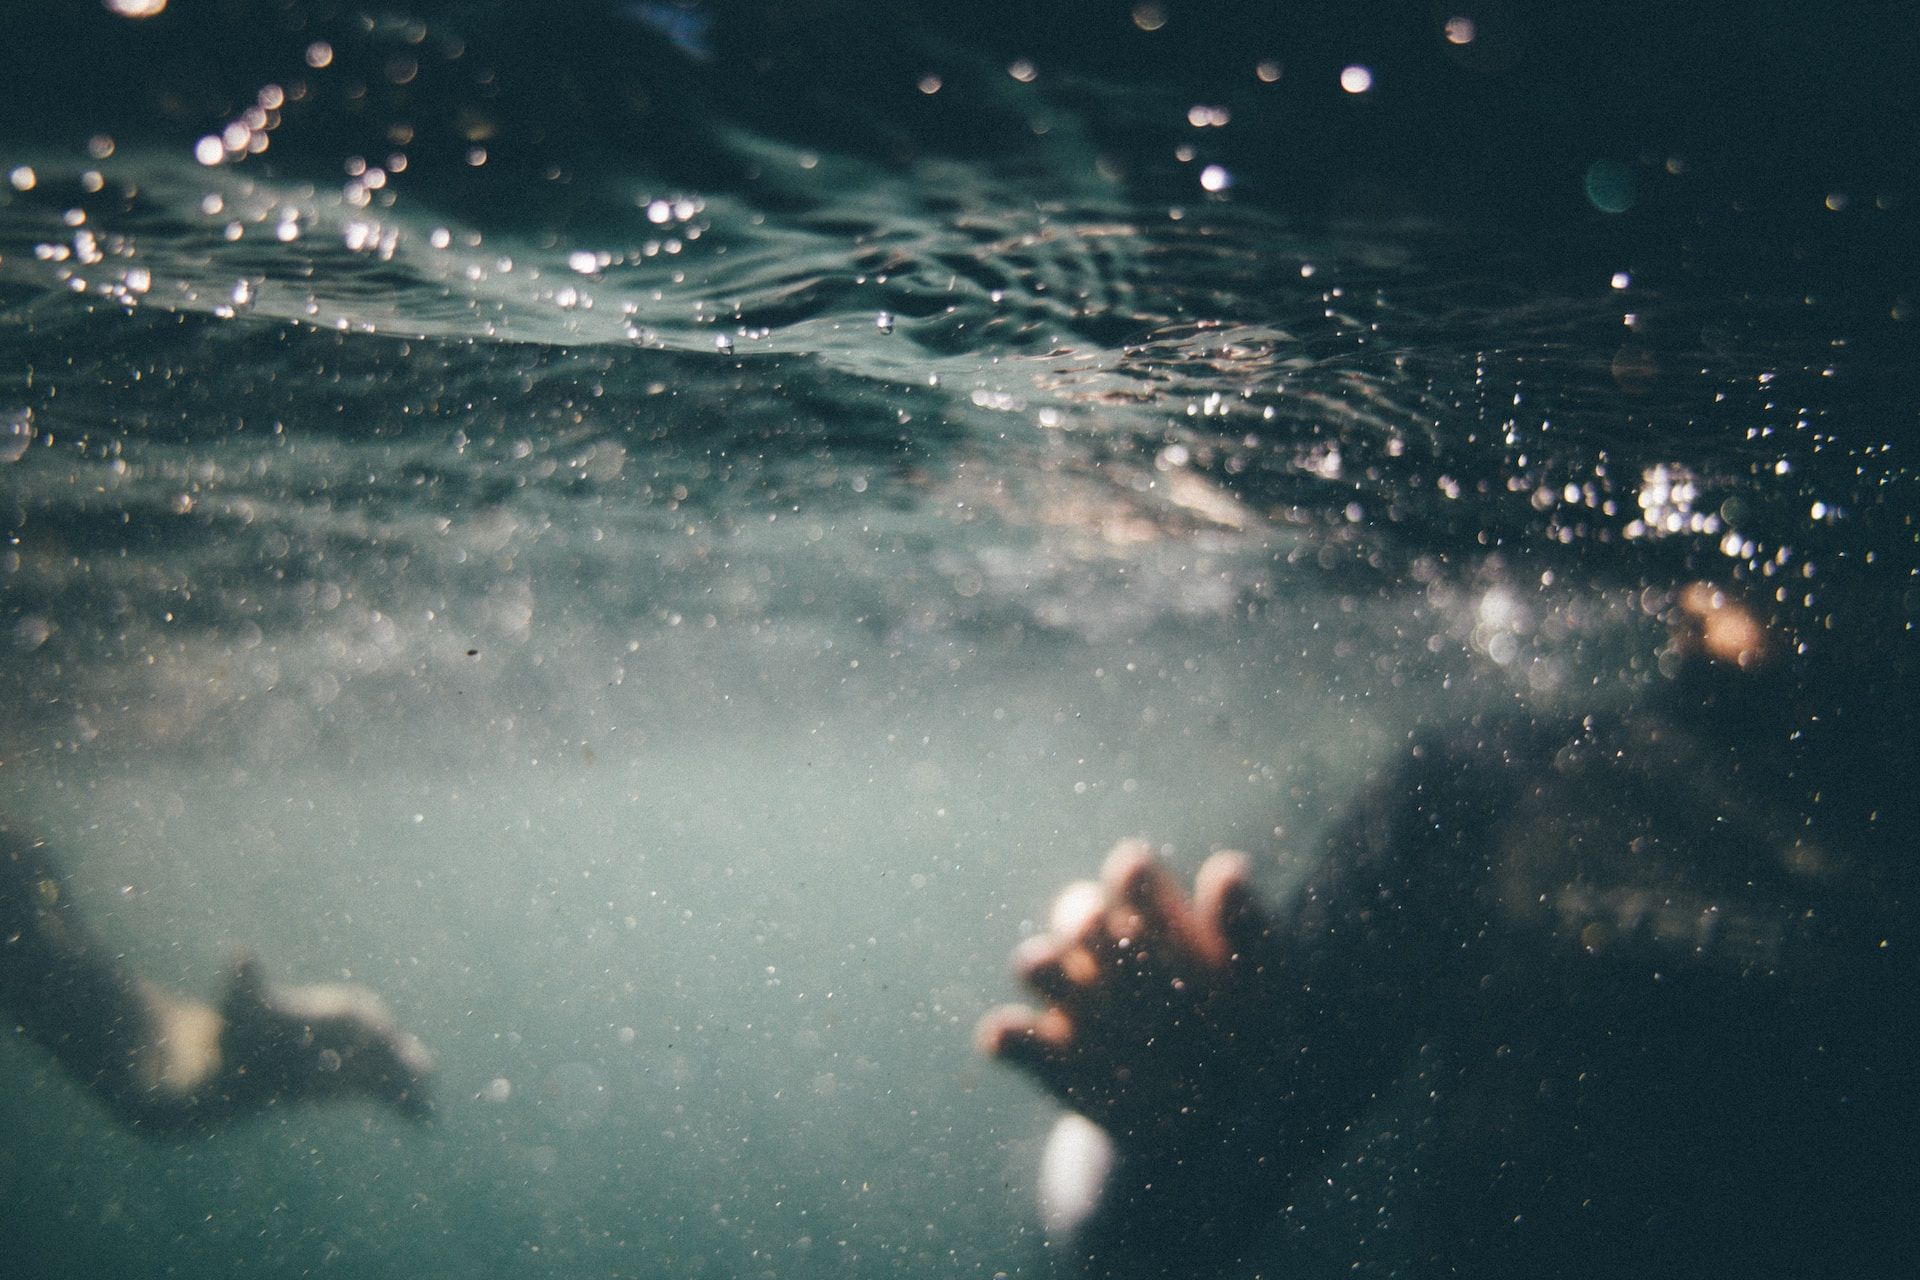 vue sous l'eau d'une personne en train de nager. Photo de Tim Marshall sur https://unsplash.com/fr/photos/T-AOFf2B8Zw